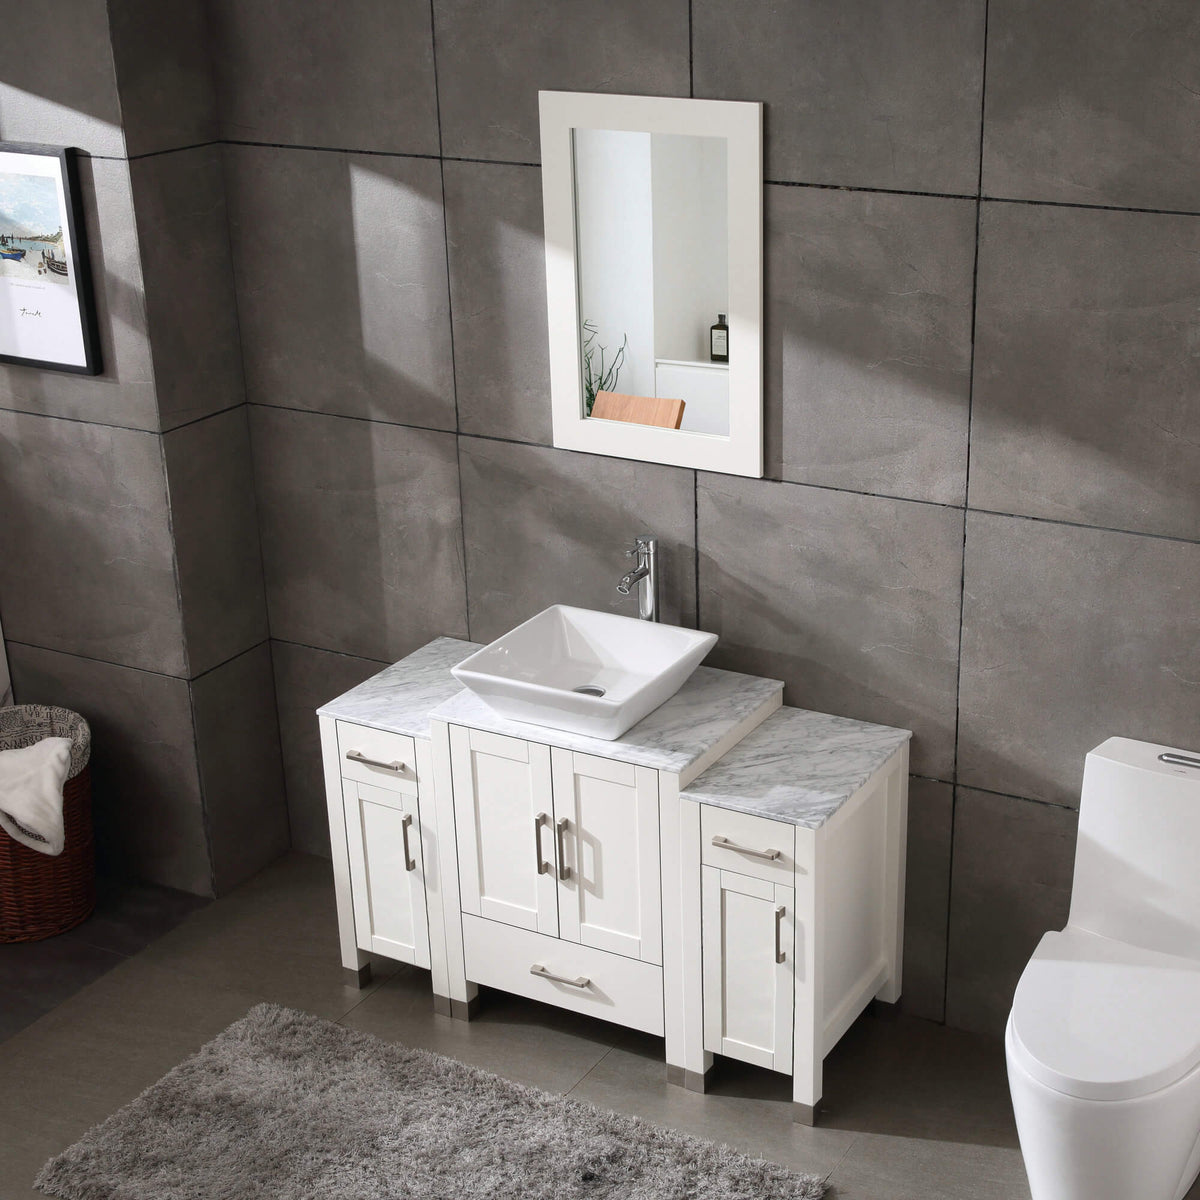 48" White Marble Top Bathroom Vanity Double Sink